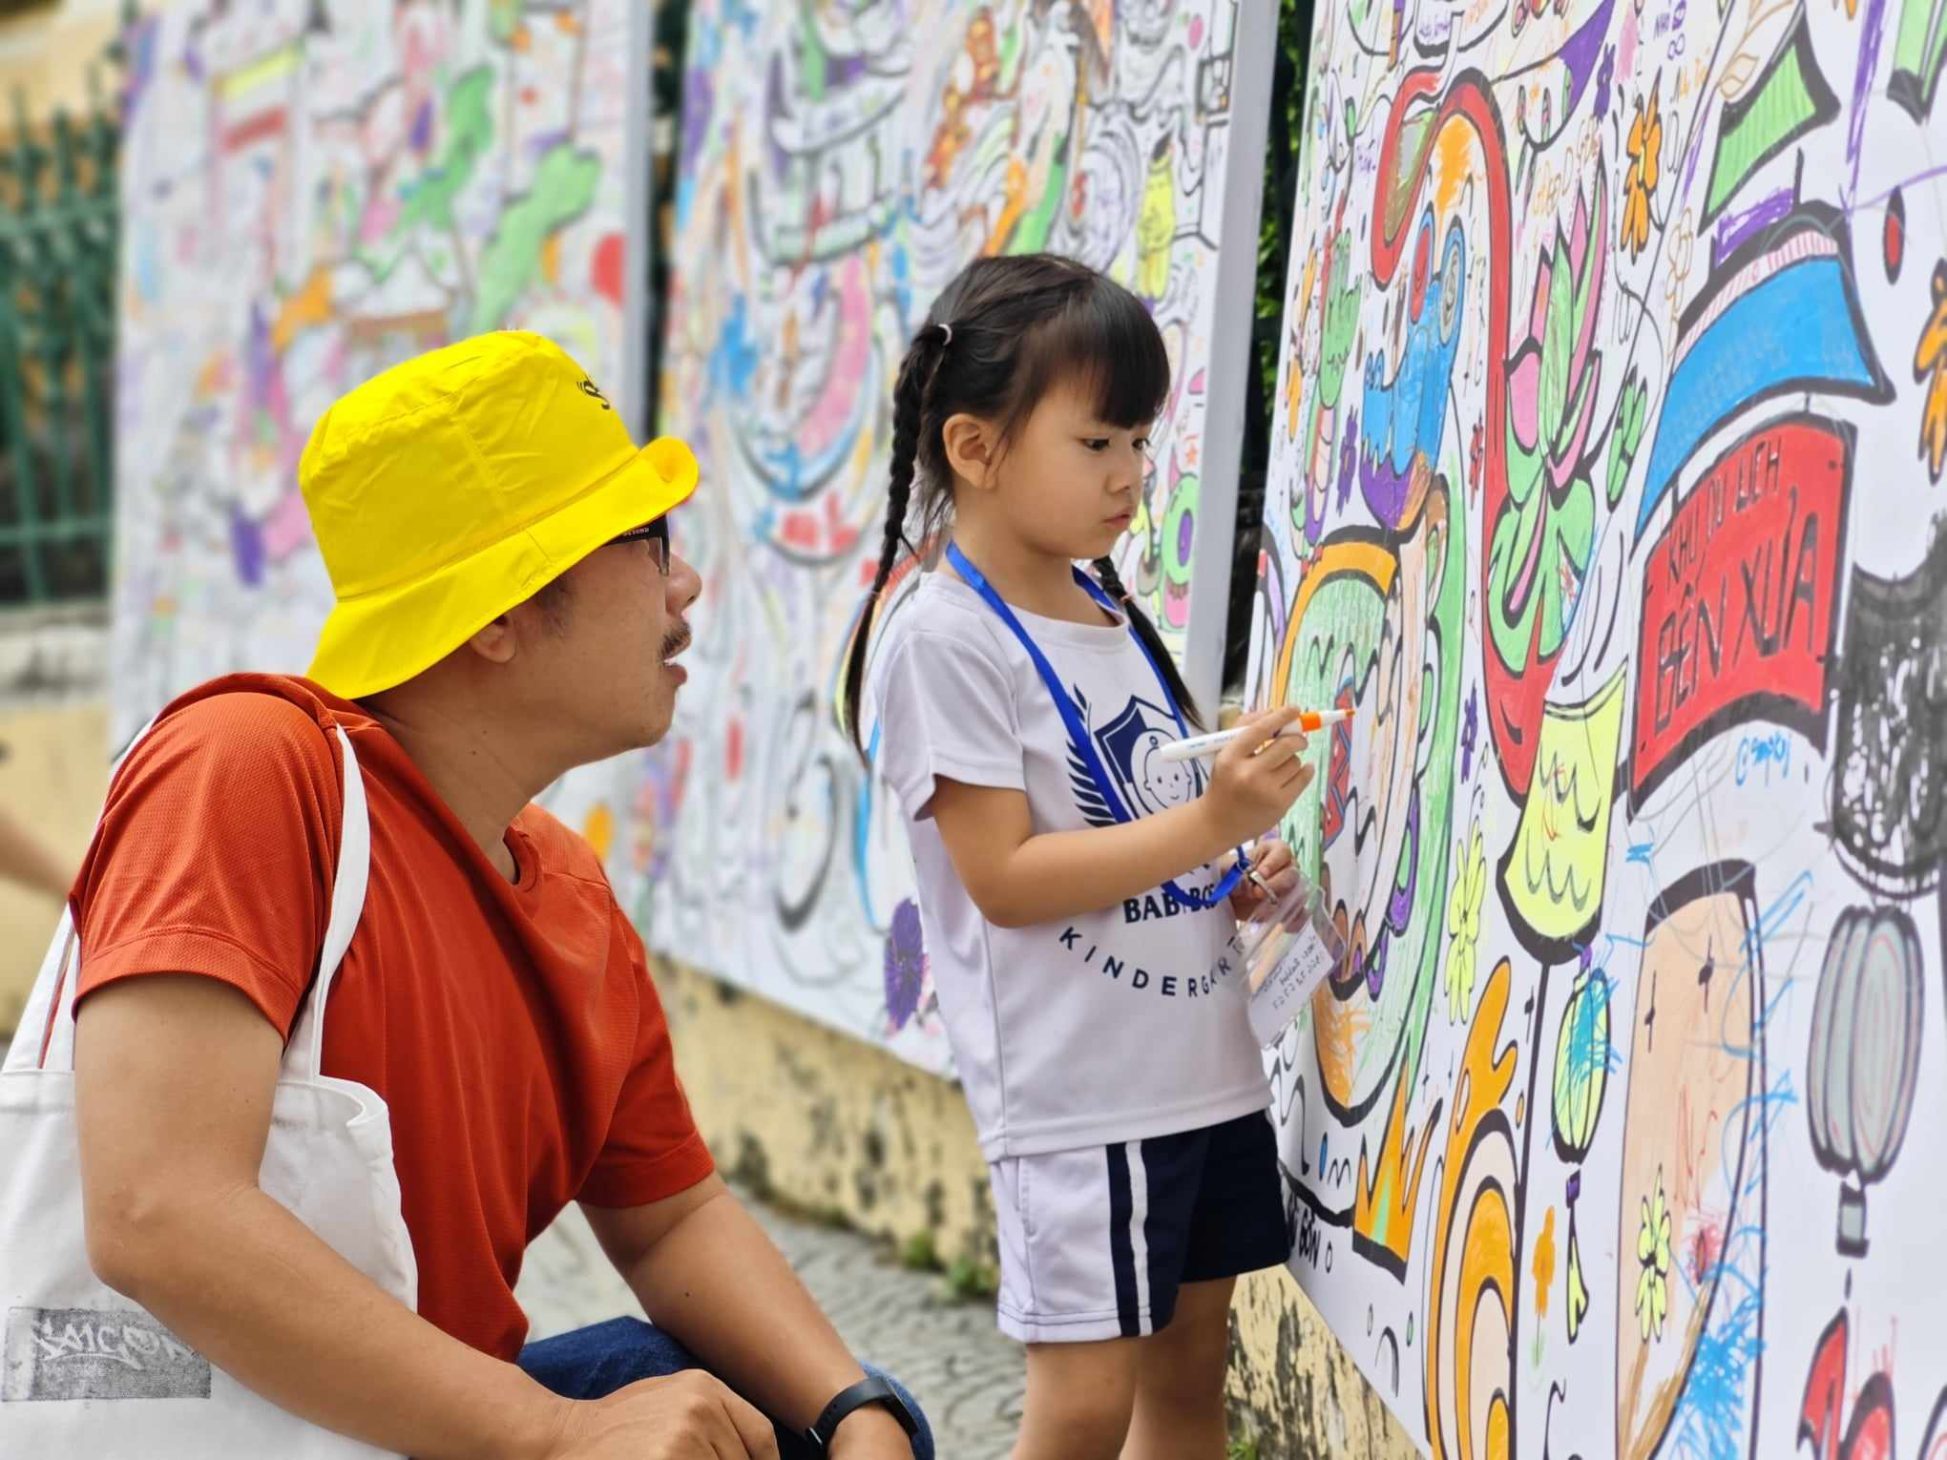 Lễ hội nghệ thuật đường phố cho giới trẻ tại Bưu điện Trung tâm Sài Gòn, hấp dẫn và miễn phí - 404904183 697571589007099 7958151583701485442 n